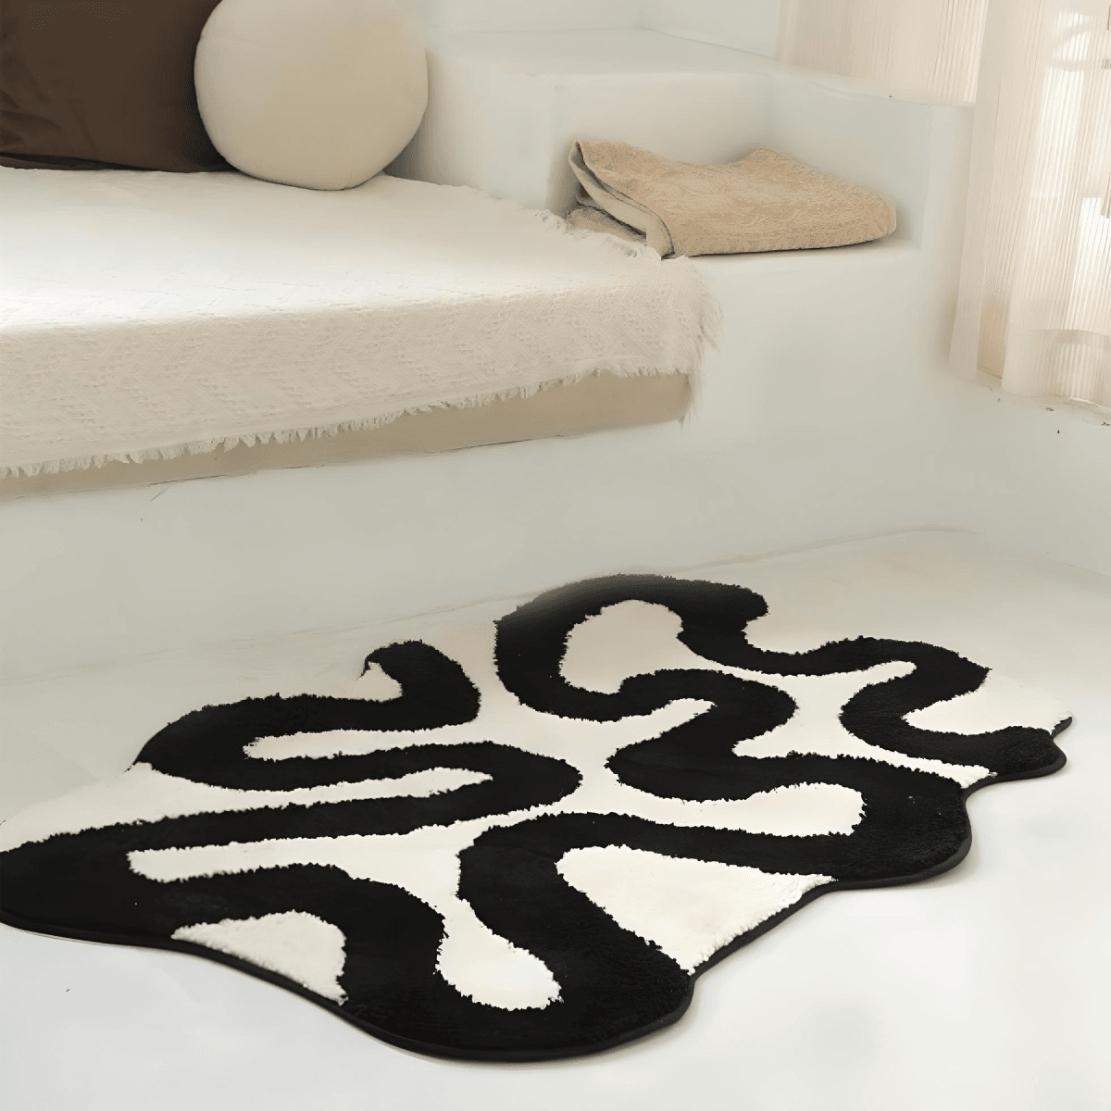 Black asymmetrical line art floor carpet